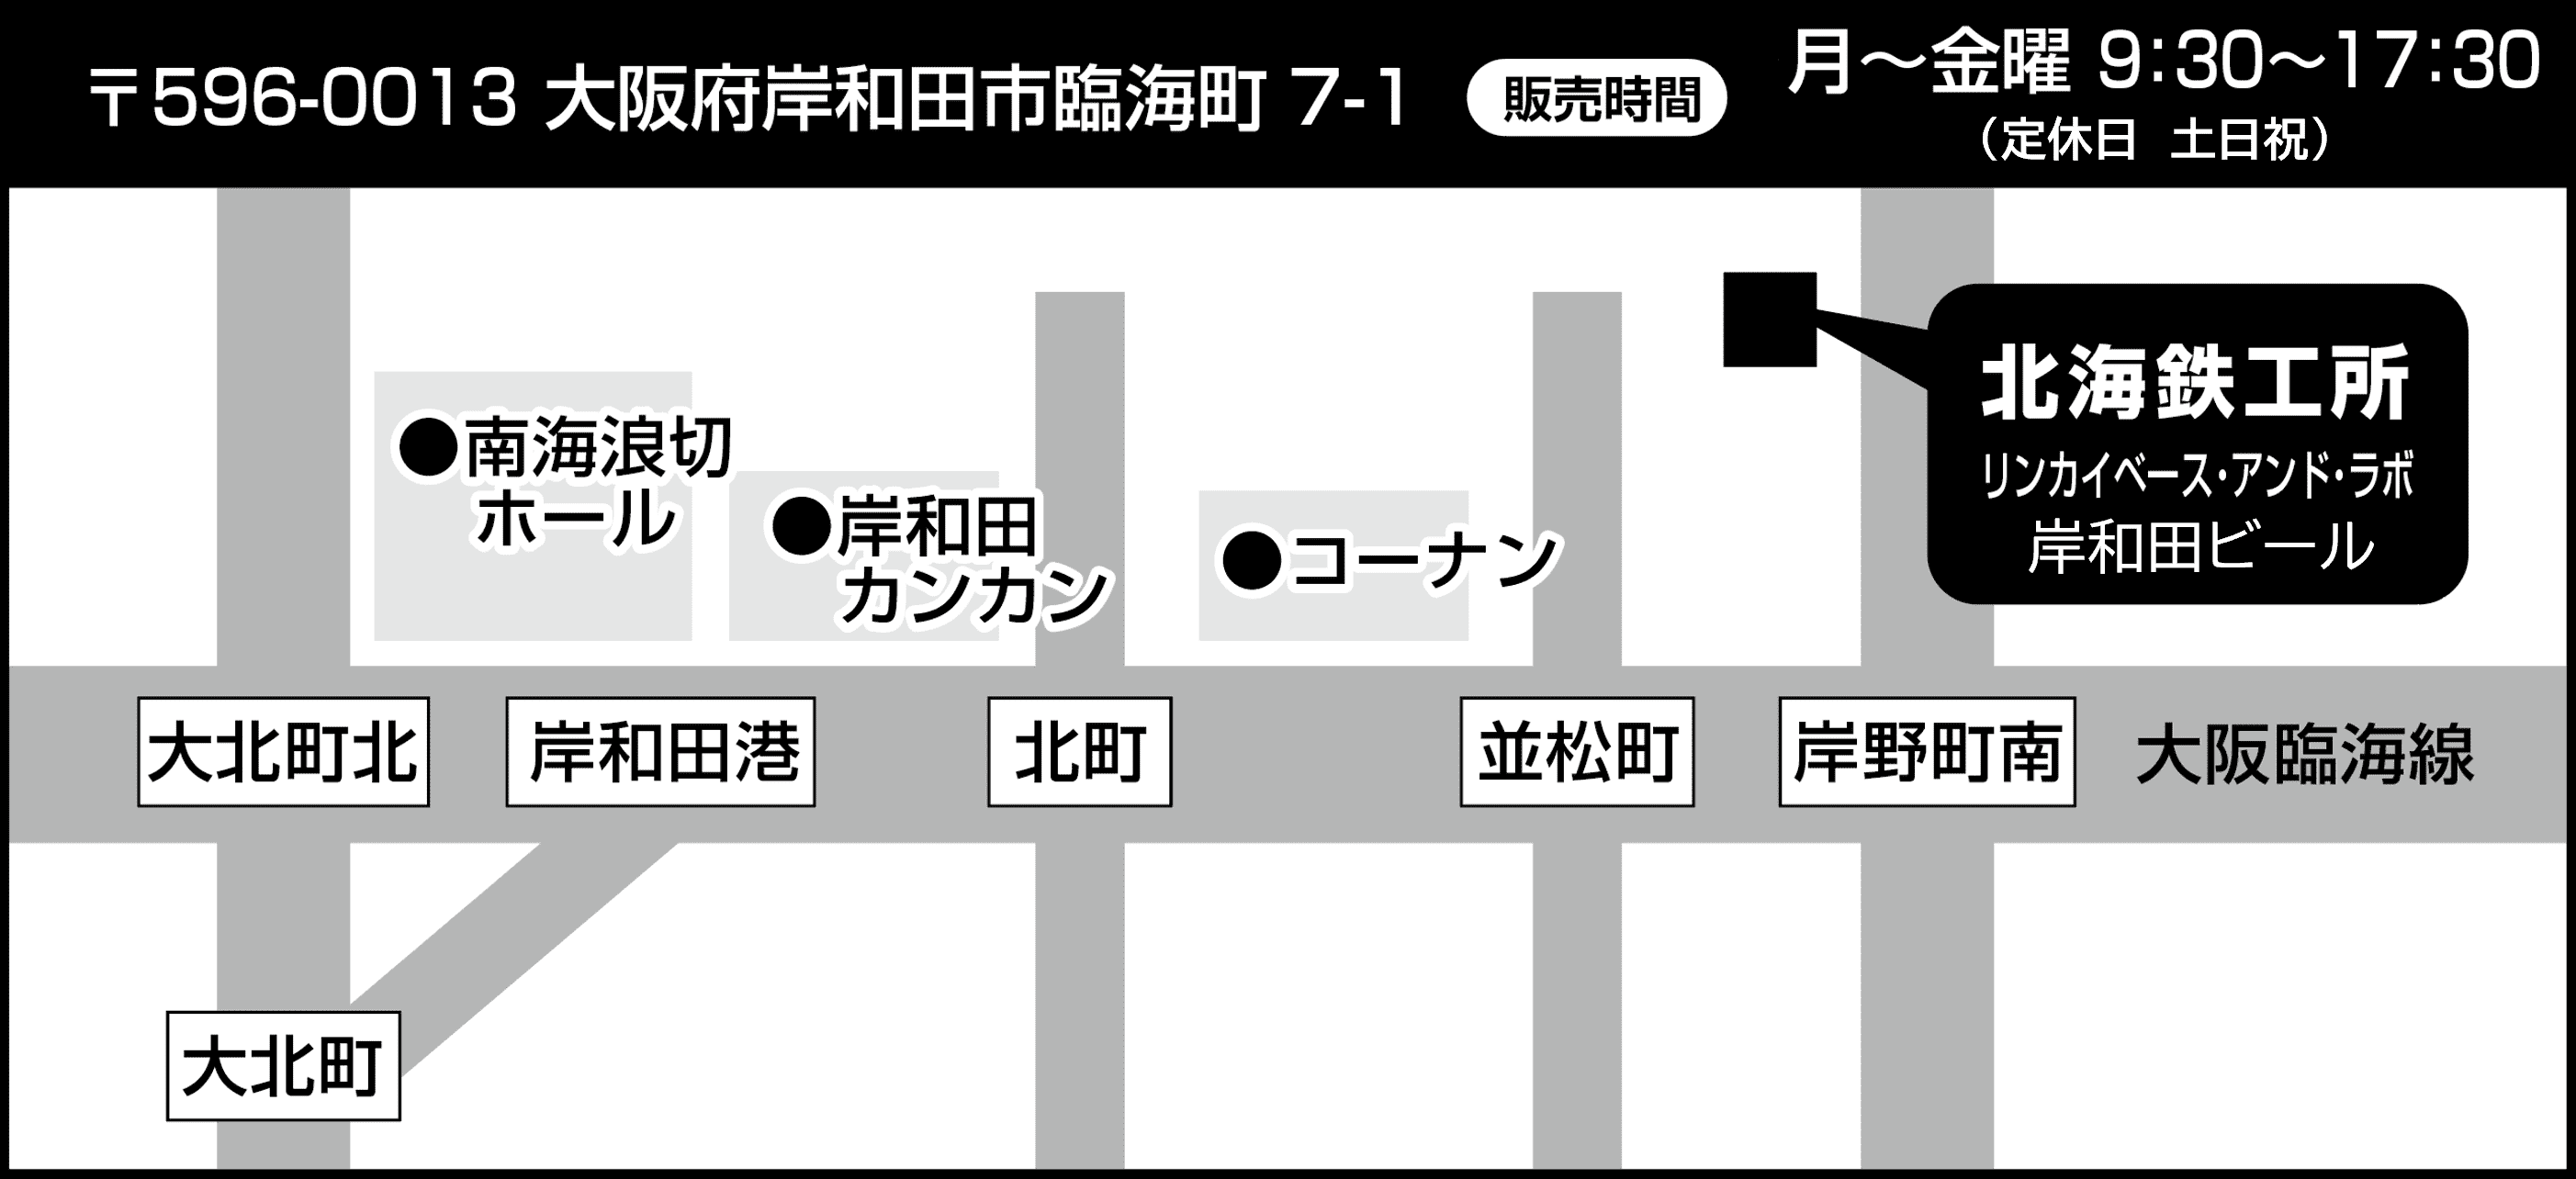 株式会社北海鉄工所・岸和田ビール